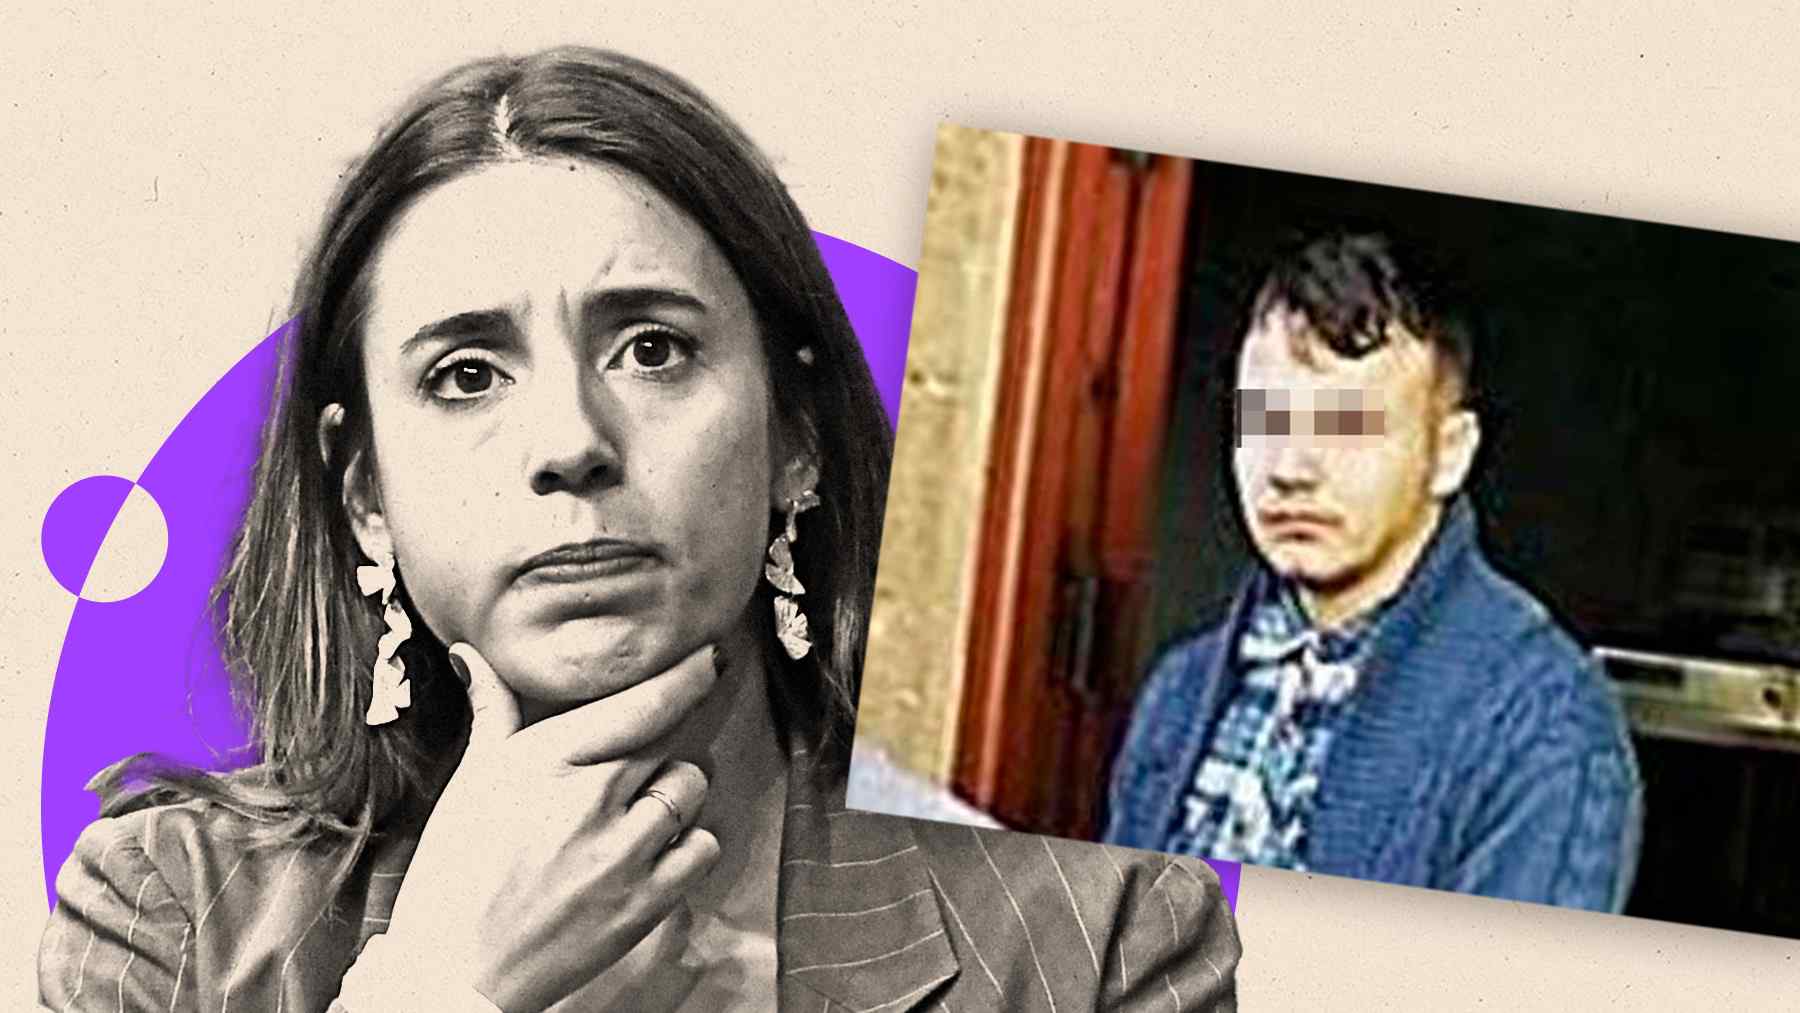 La ministra Irene Montero y el violador beneficiado por la ley del ‘sólo sí es sí’. (Imagen del violador cedida por ‘Diario de Mallorca’).